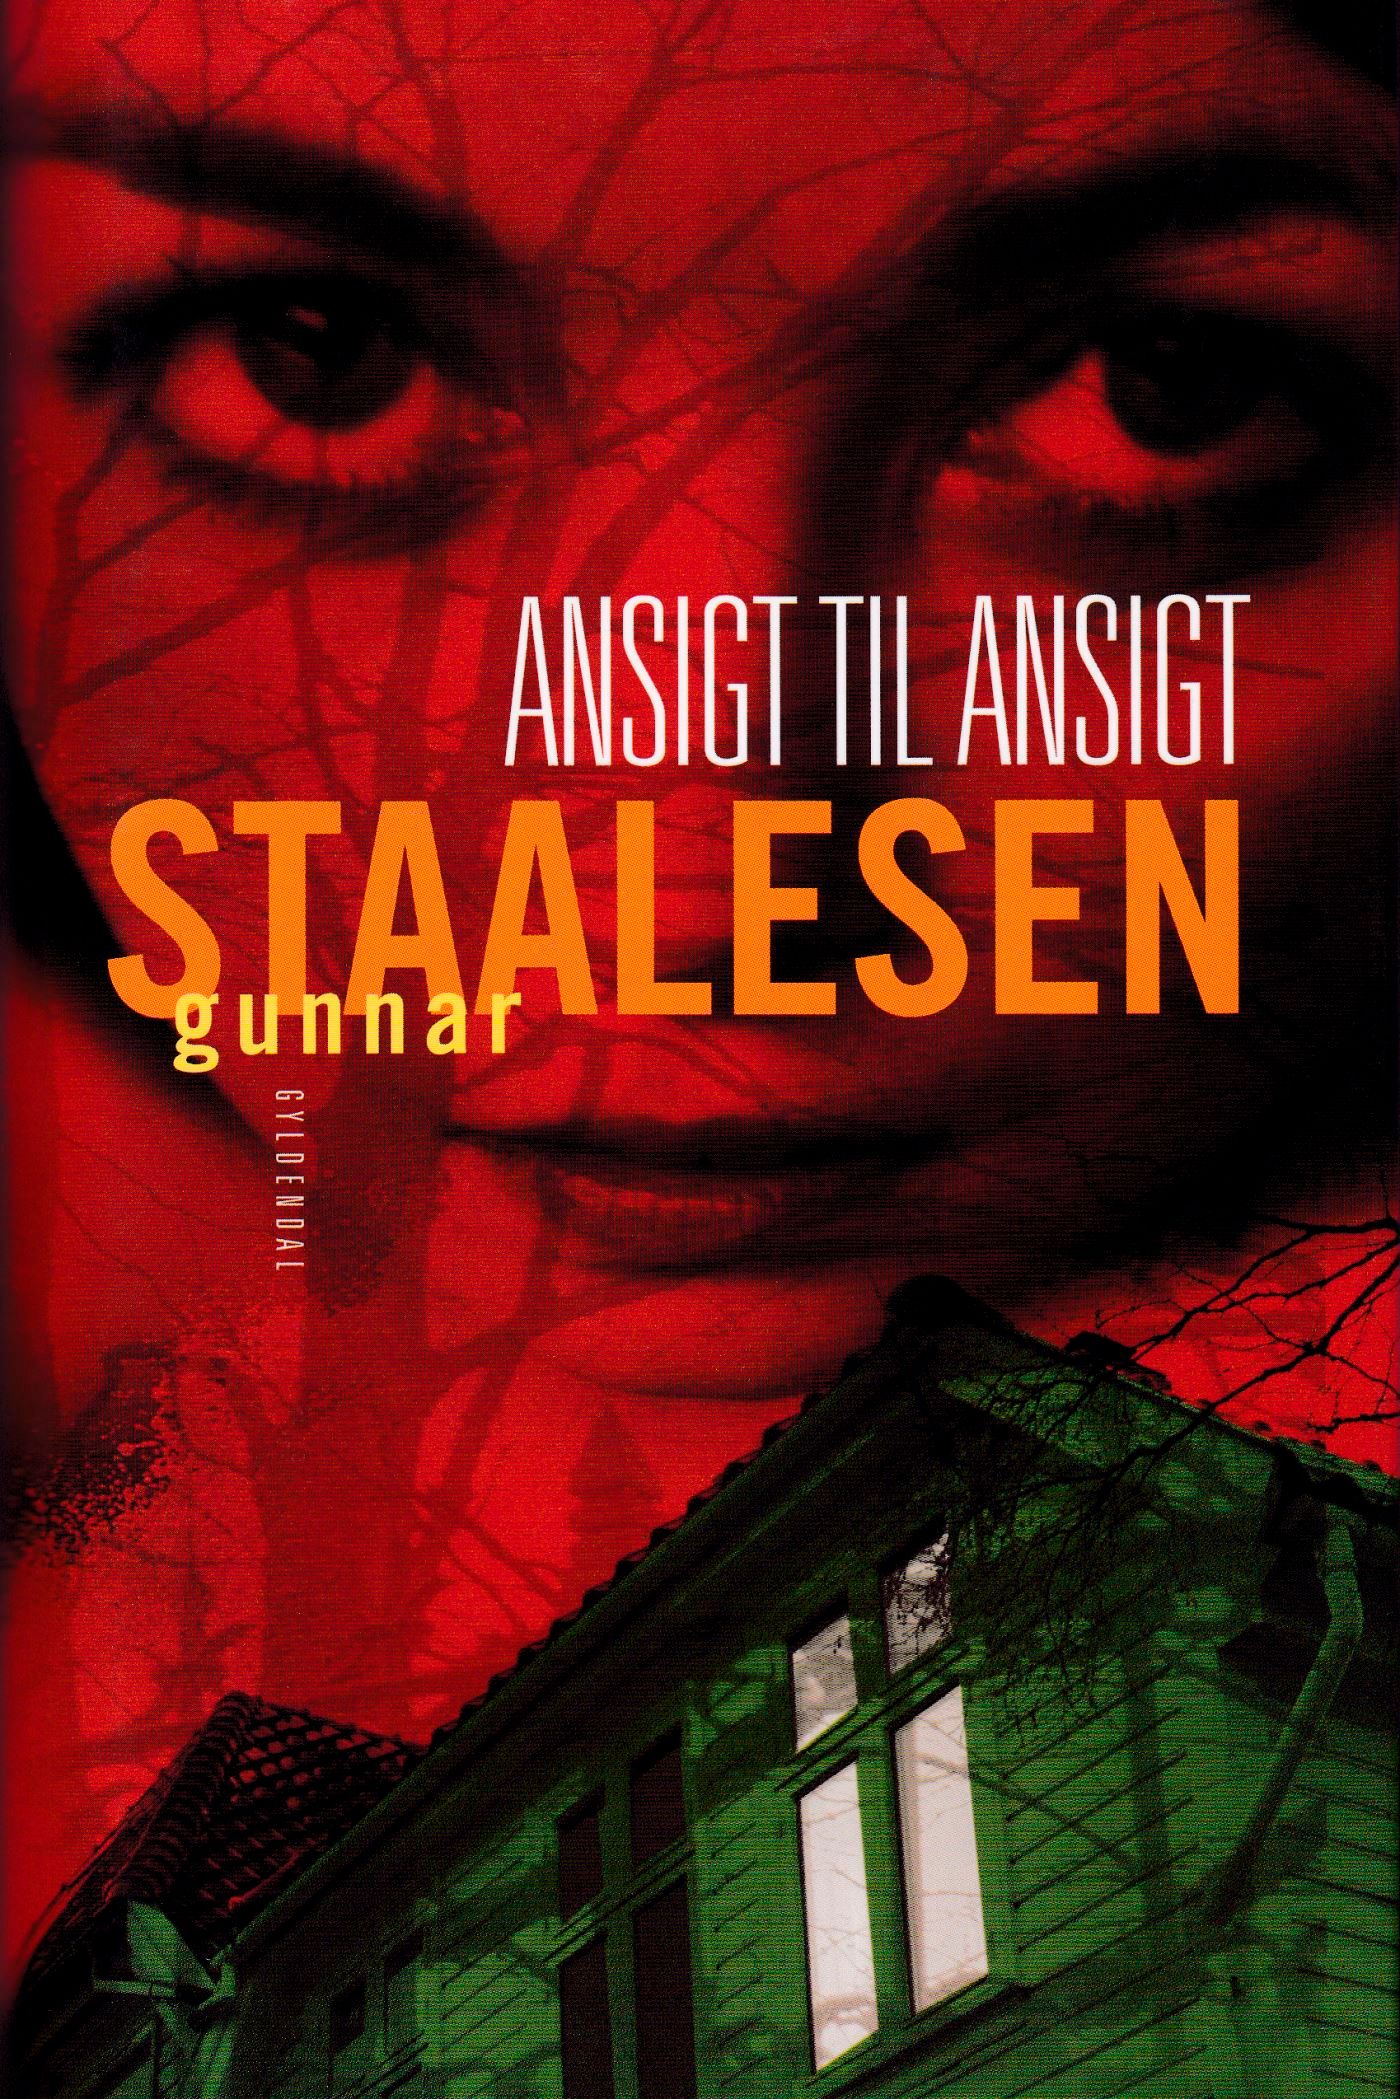 Ansigt til ansigt, audiobook by Gunnar Staalesen